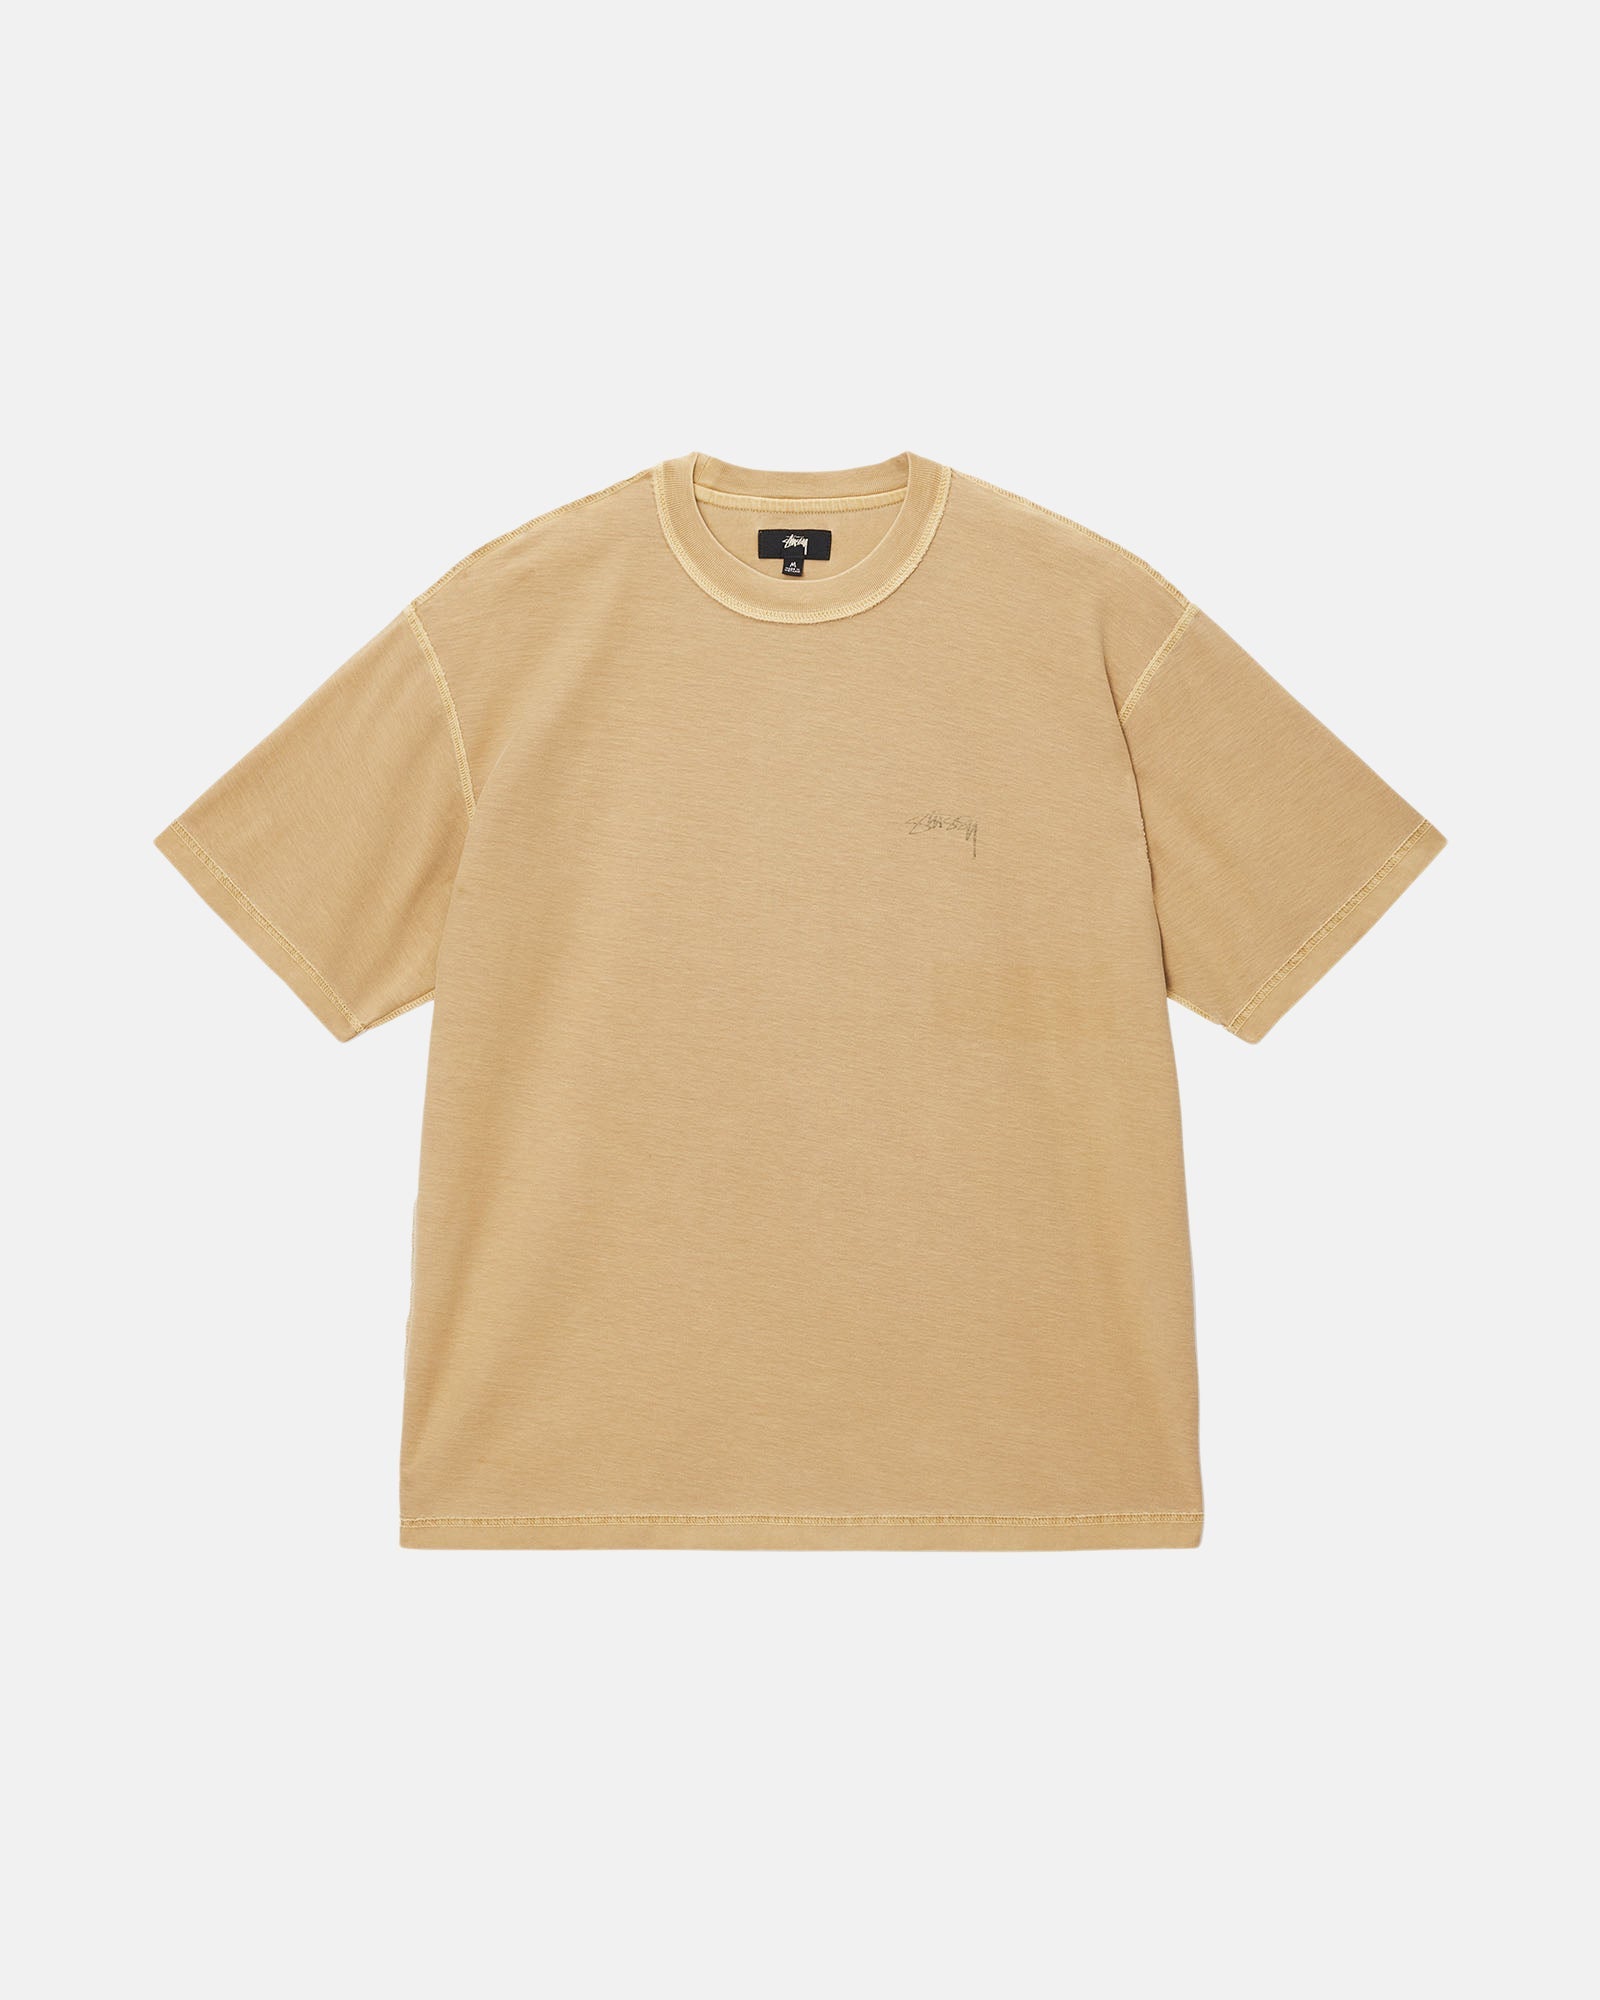 通販サイトの激安商品 クロムハーツ Tシャツ 日章カラー stussy